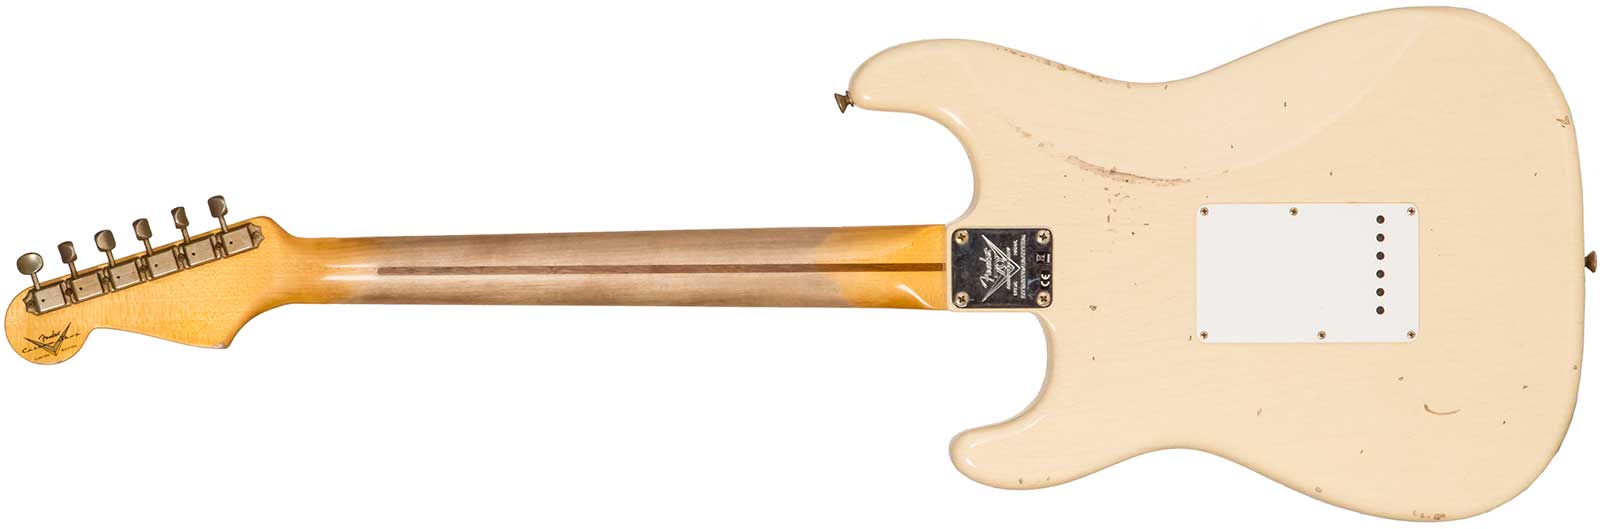 Fender Custom Shop Strat 1954 70th Anniv. 3s Trem Mn #xn4382 - Relic Vintage Blonde - Elektrische gitaar in Str-vorm - Variation 1